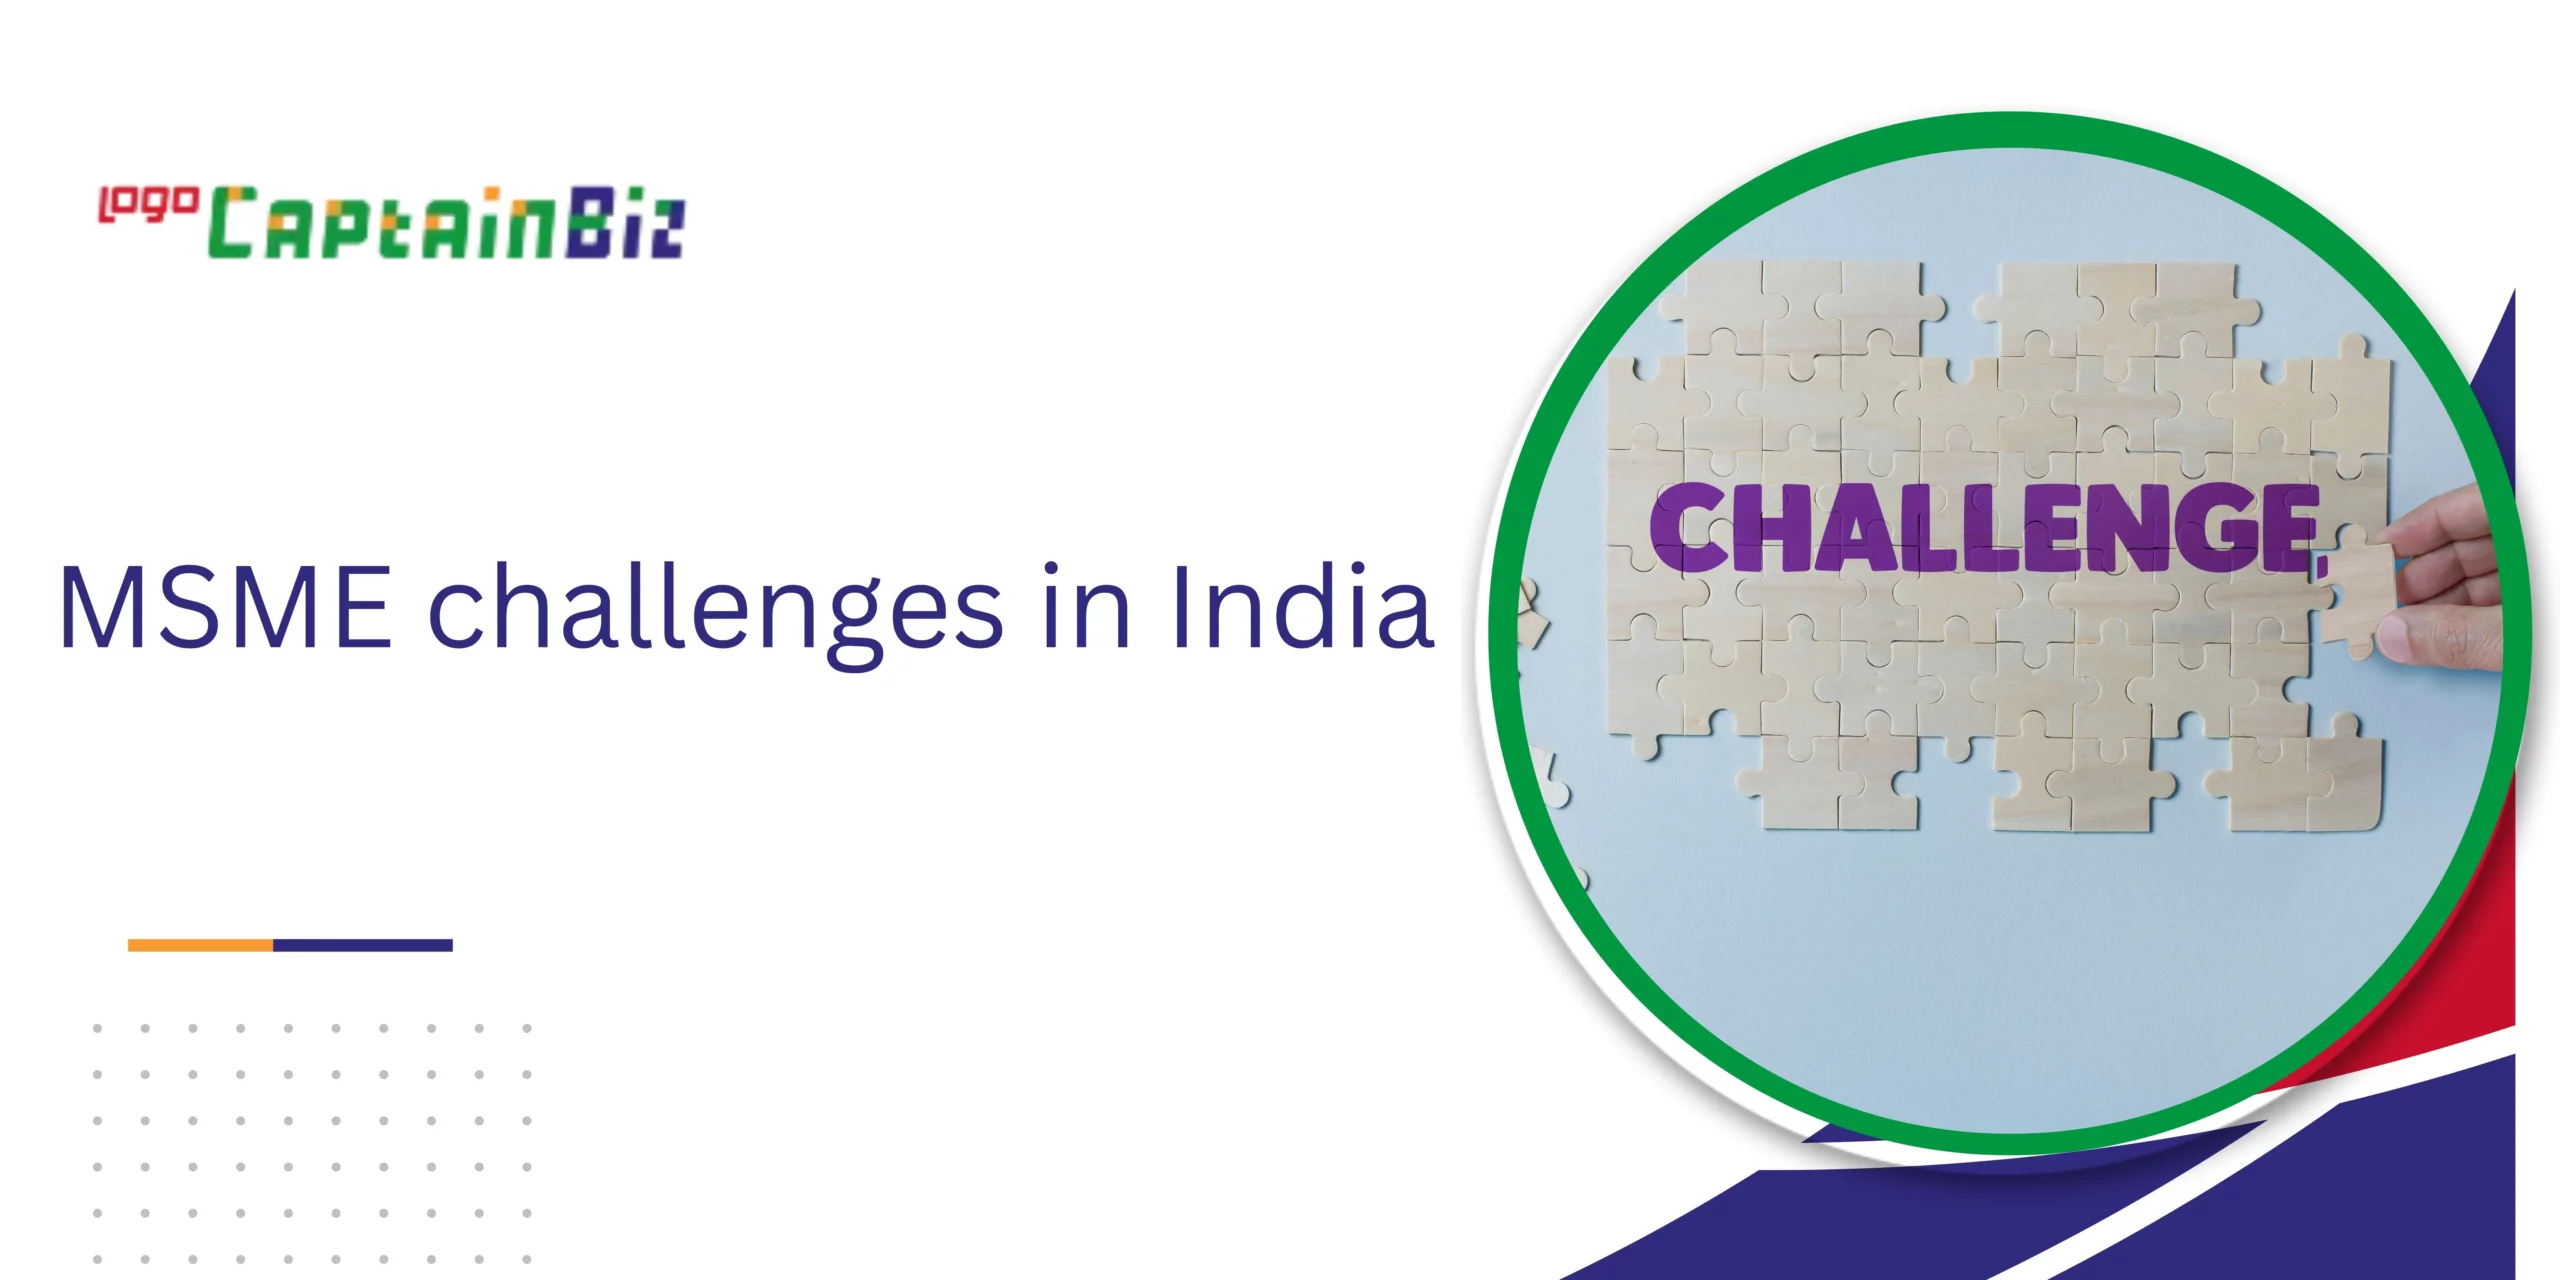 CaptainBiz: MSME challenges in India